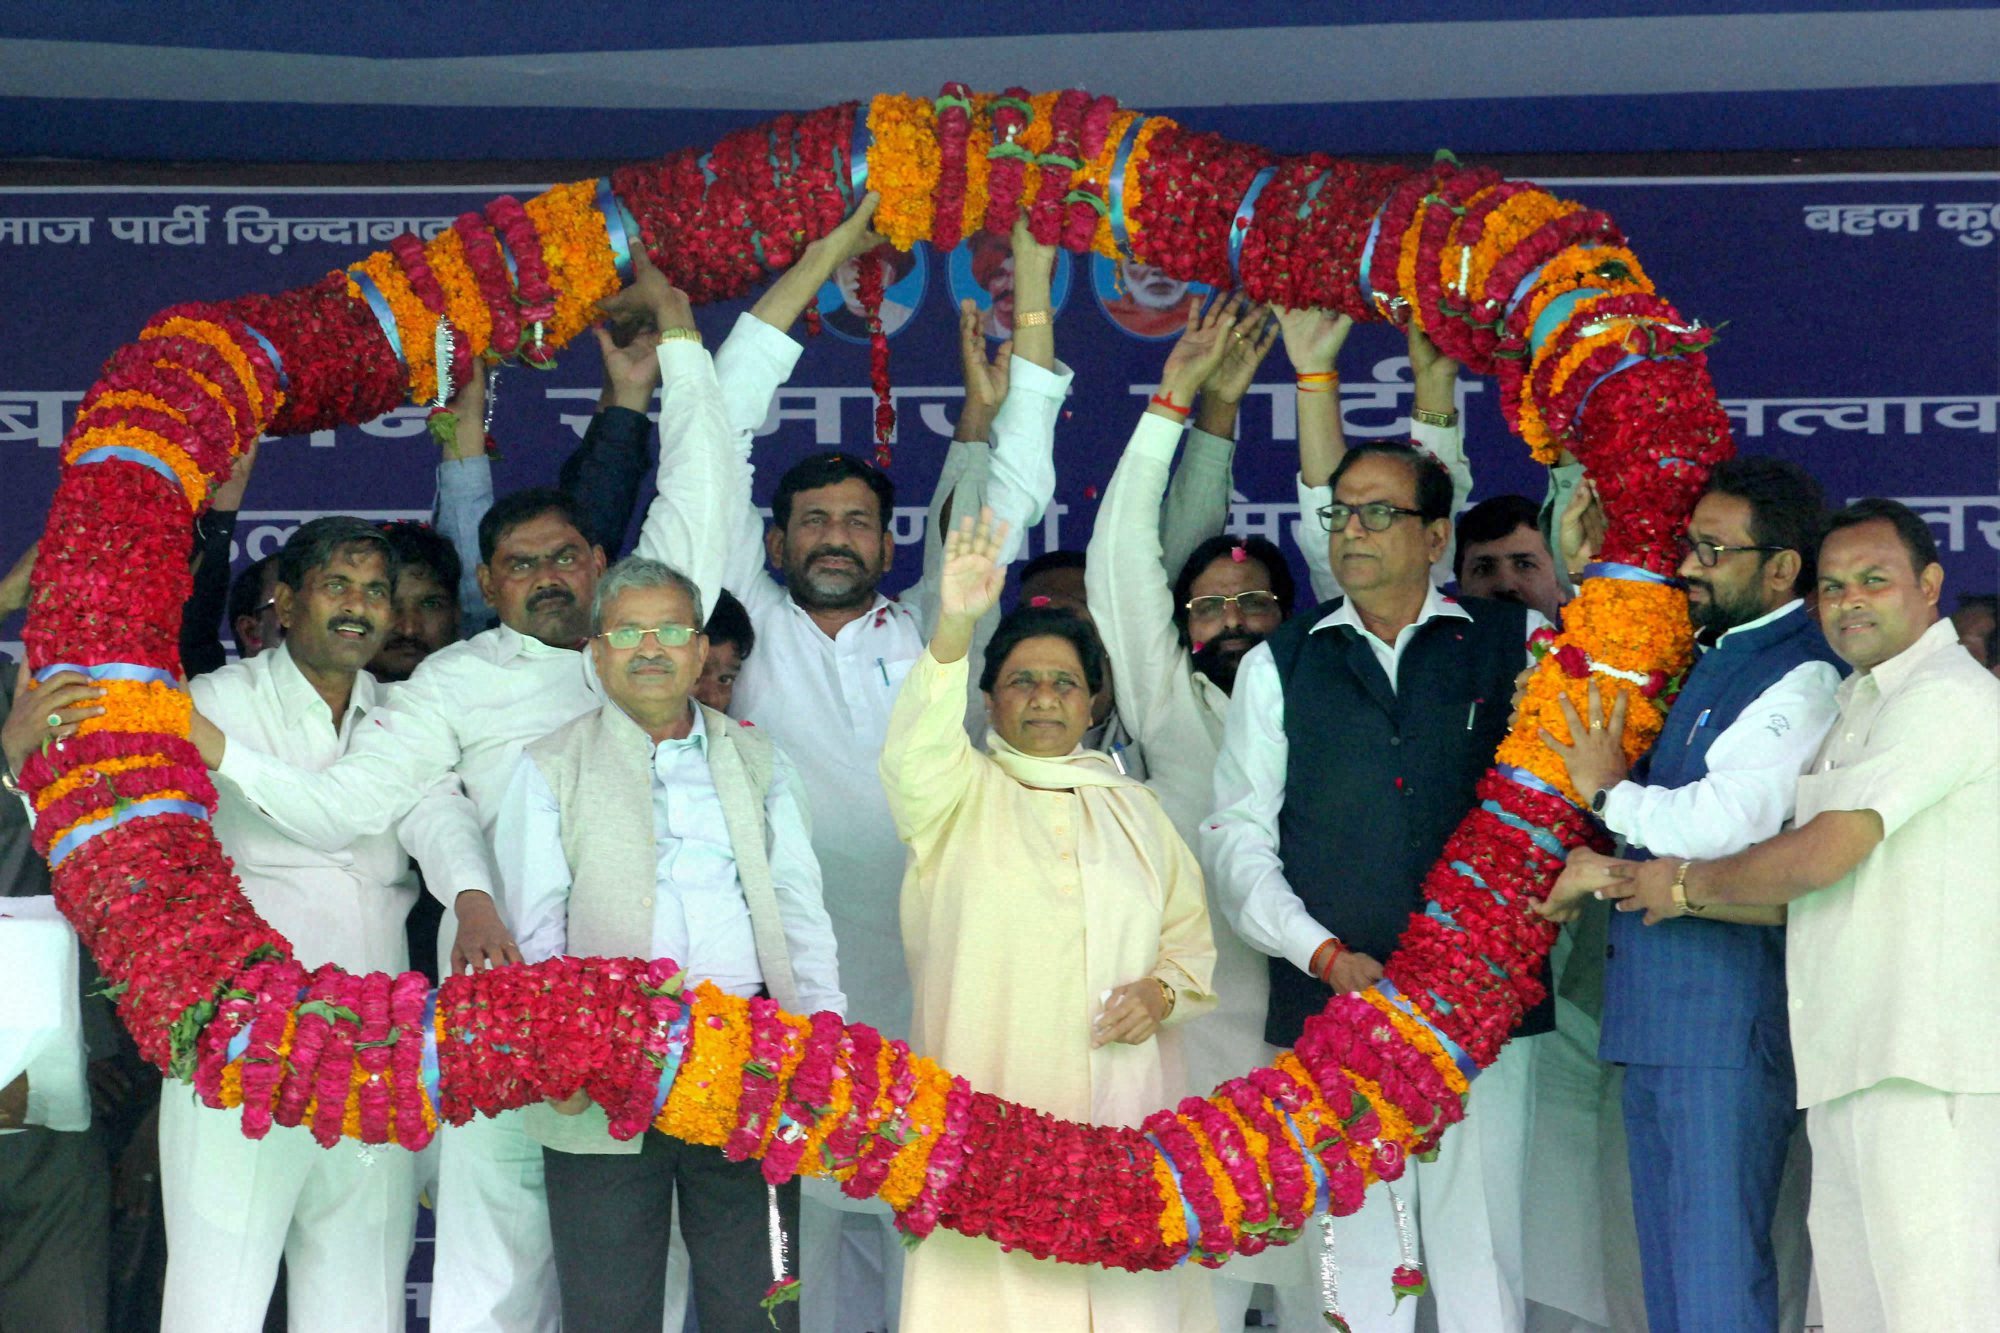 Mayawati trains guns at SP, BJP and Congress at Allahabad rally